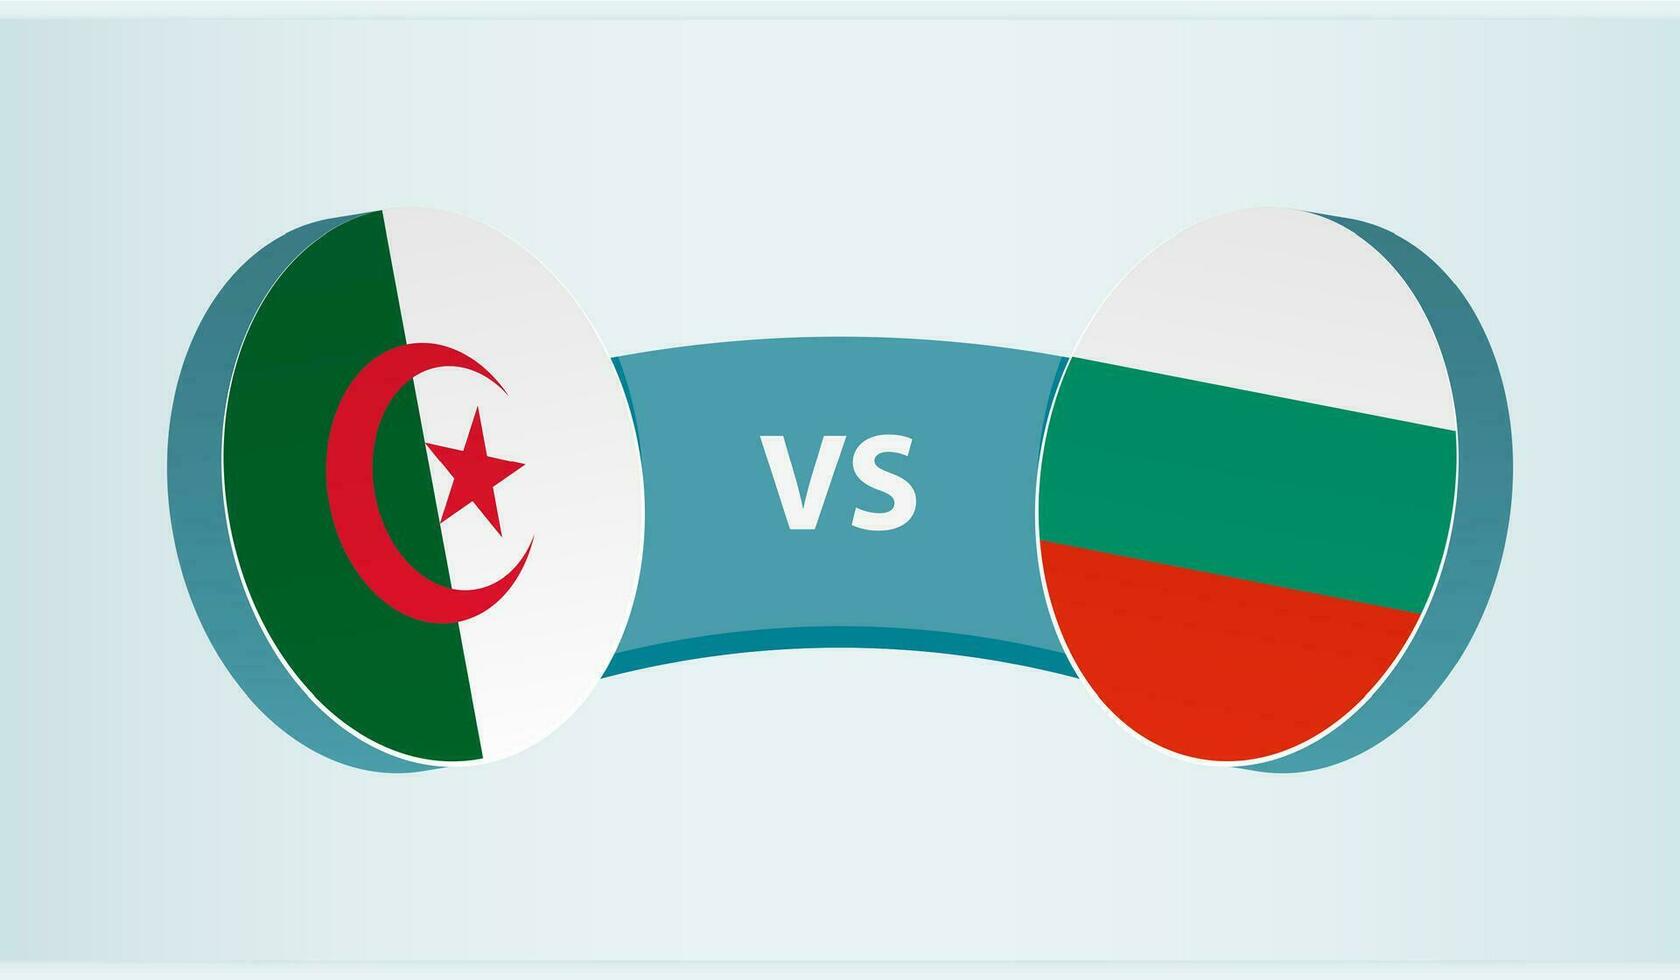 Algeria versus Bulgaria, team sports competition concept. vector